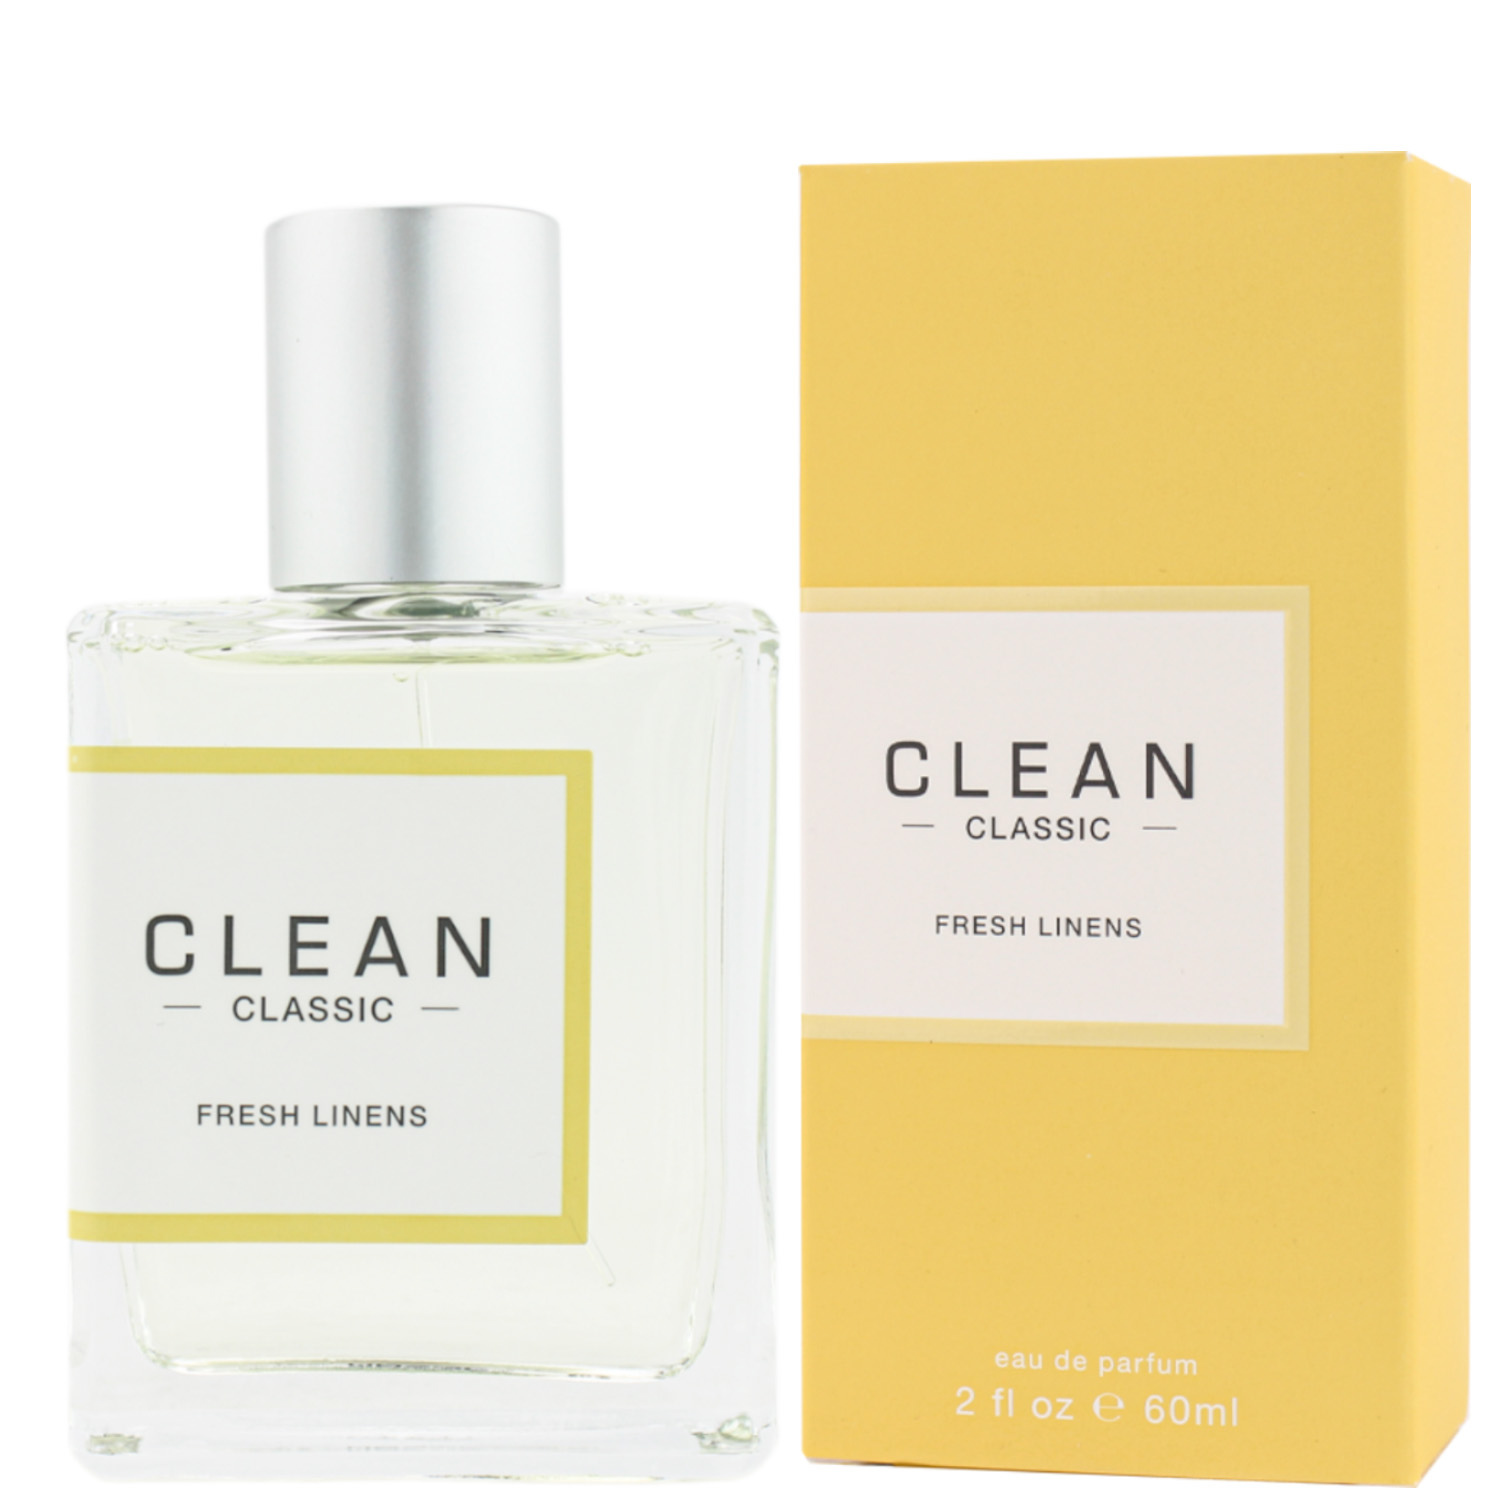 Clean Classic Fresh Linens Eau de Parfum 60ml 